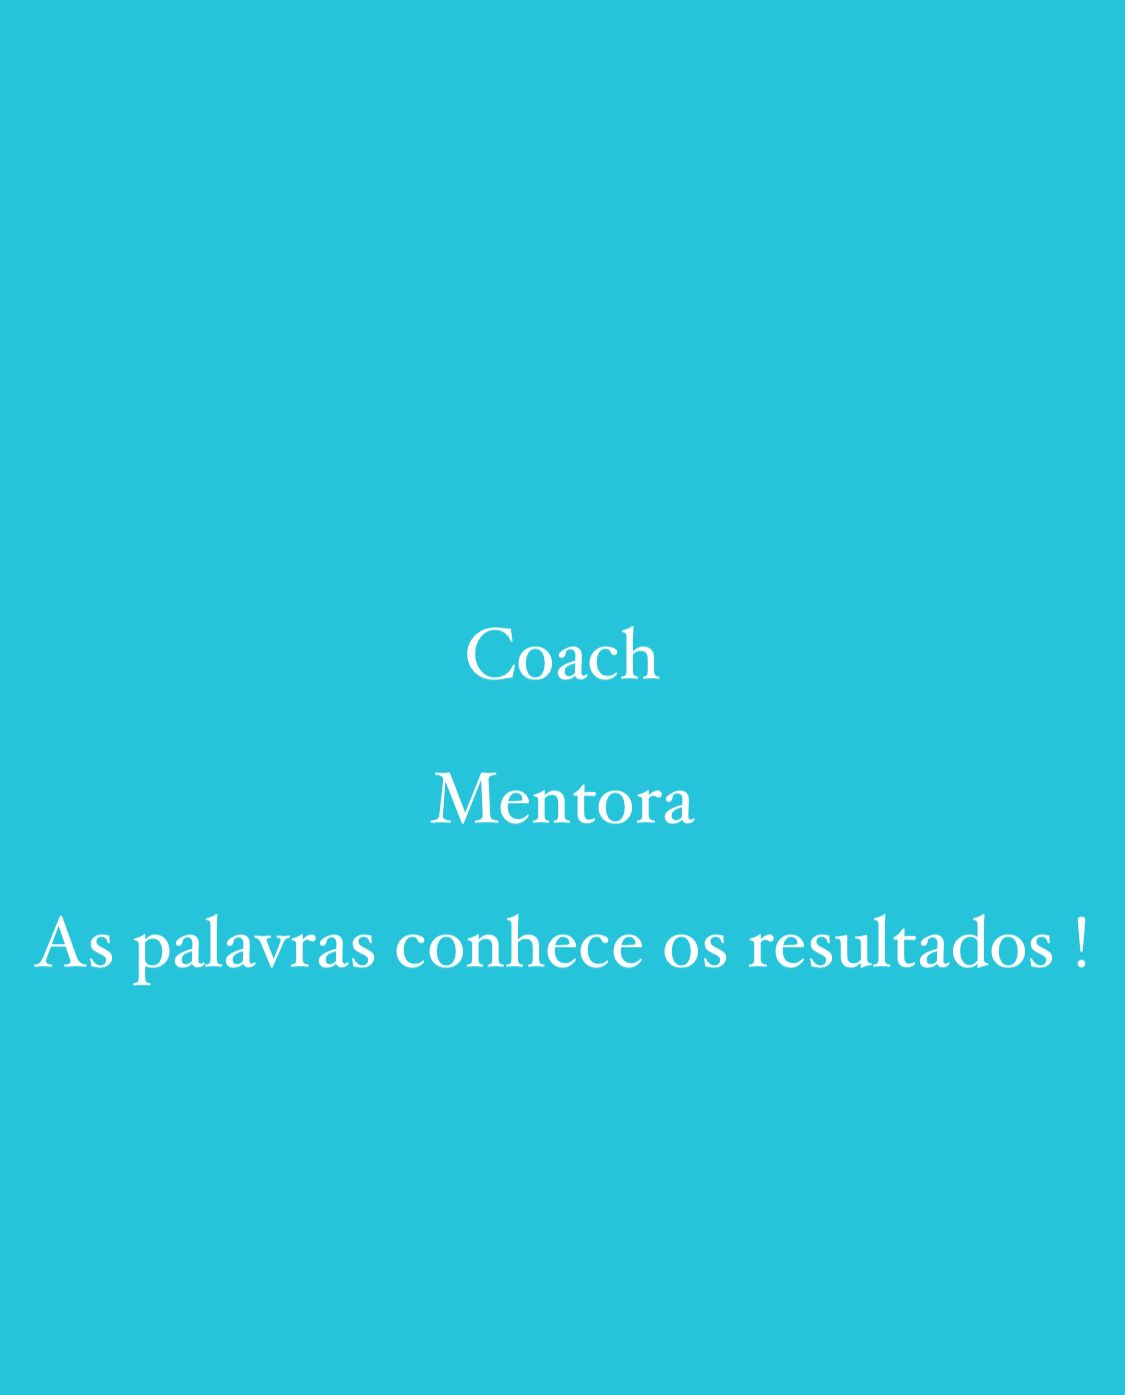 Cristina Mentora - Amadora - Coaching de Carreira